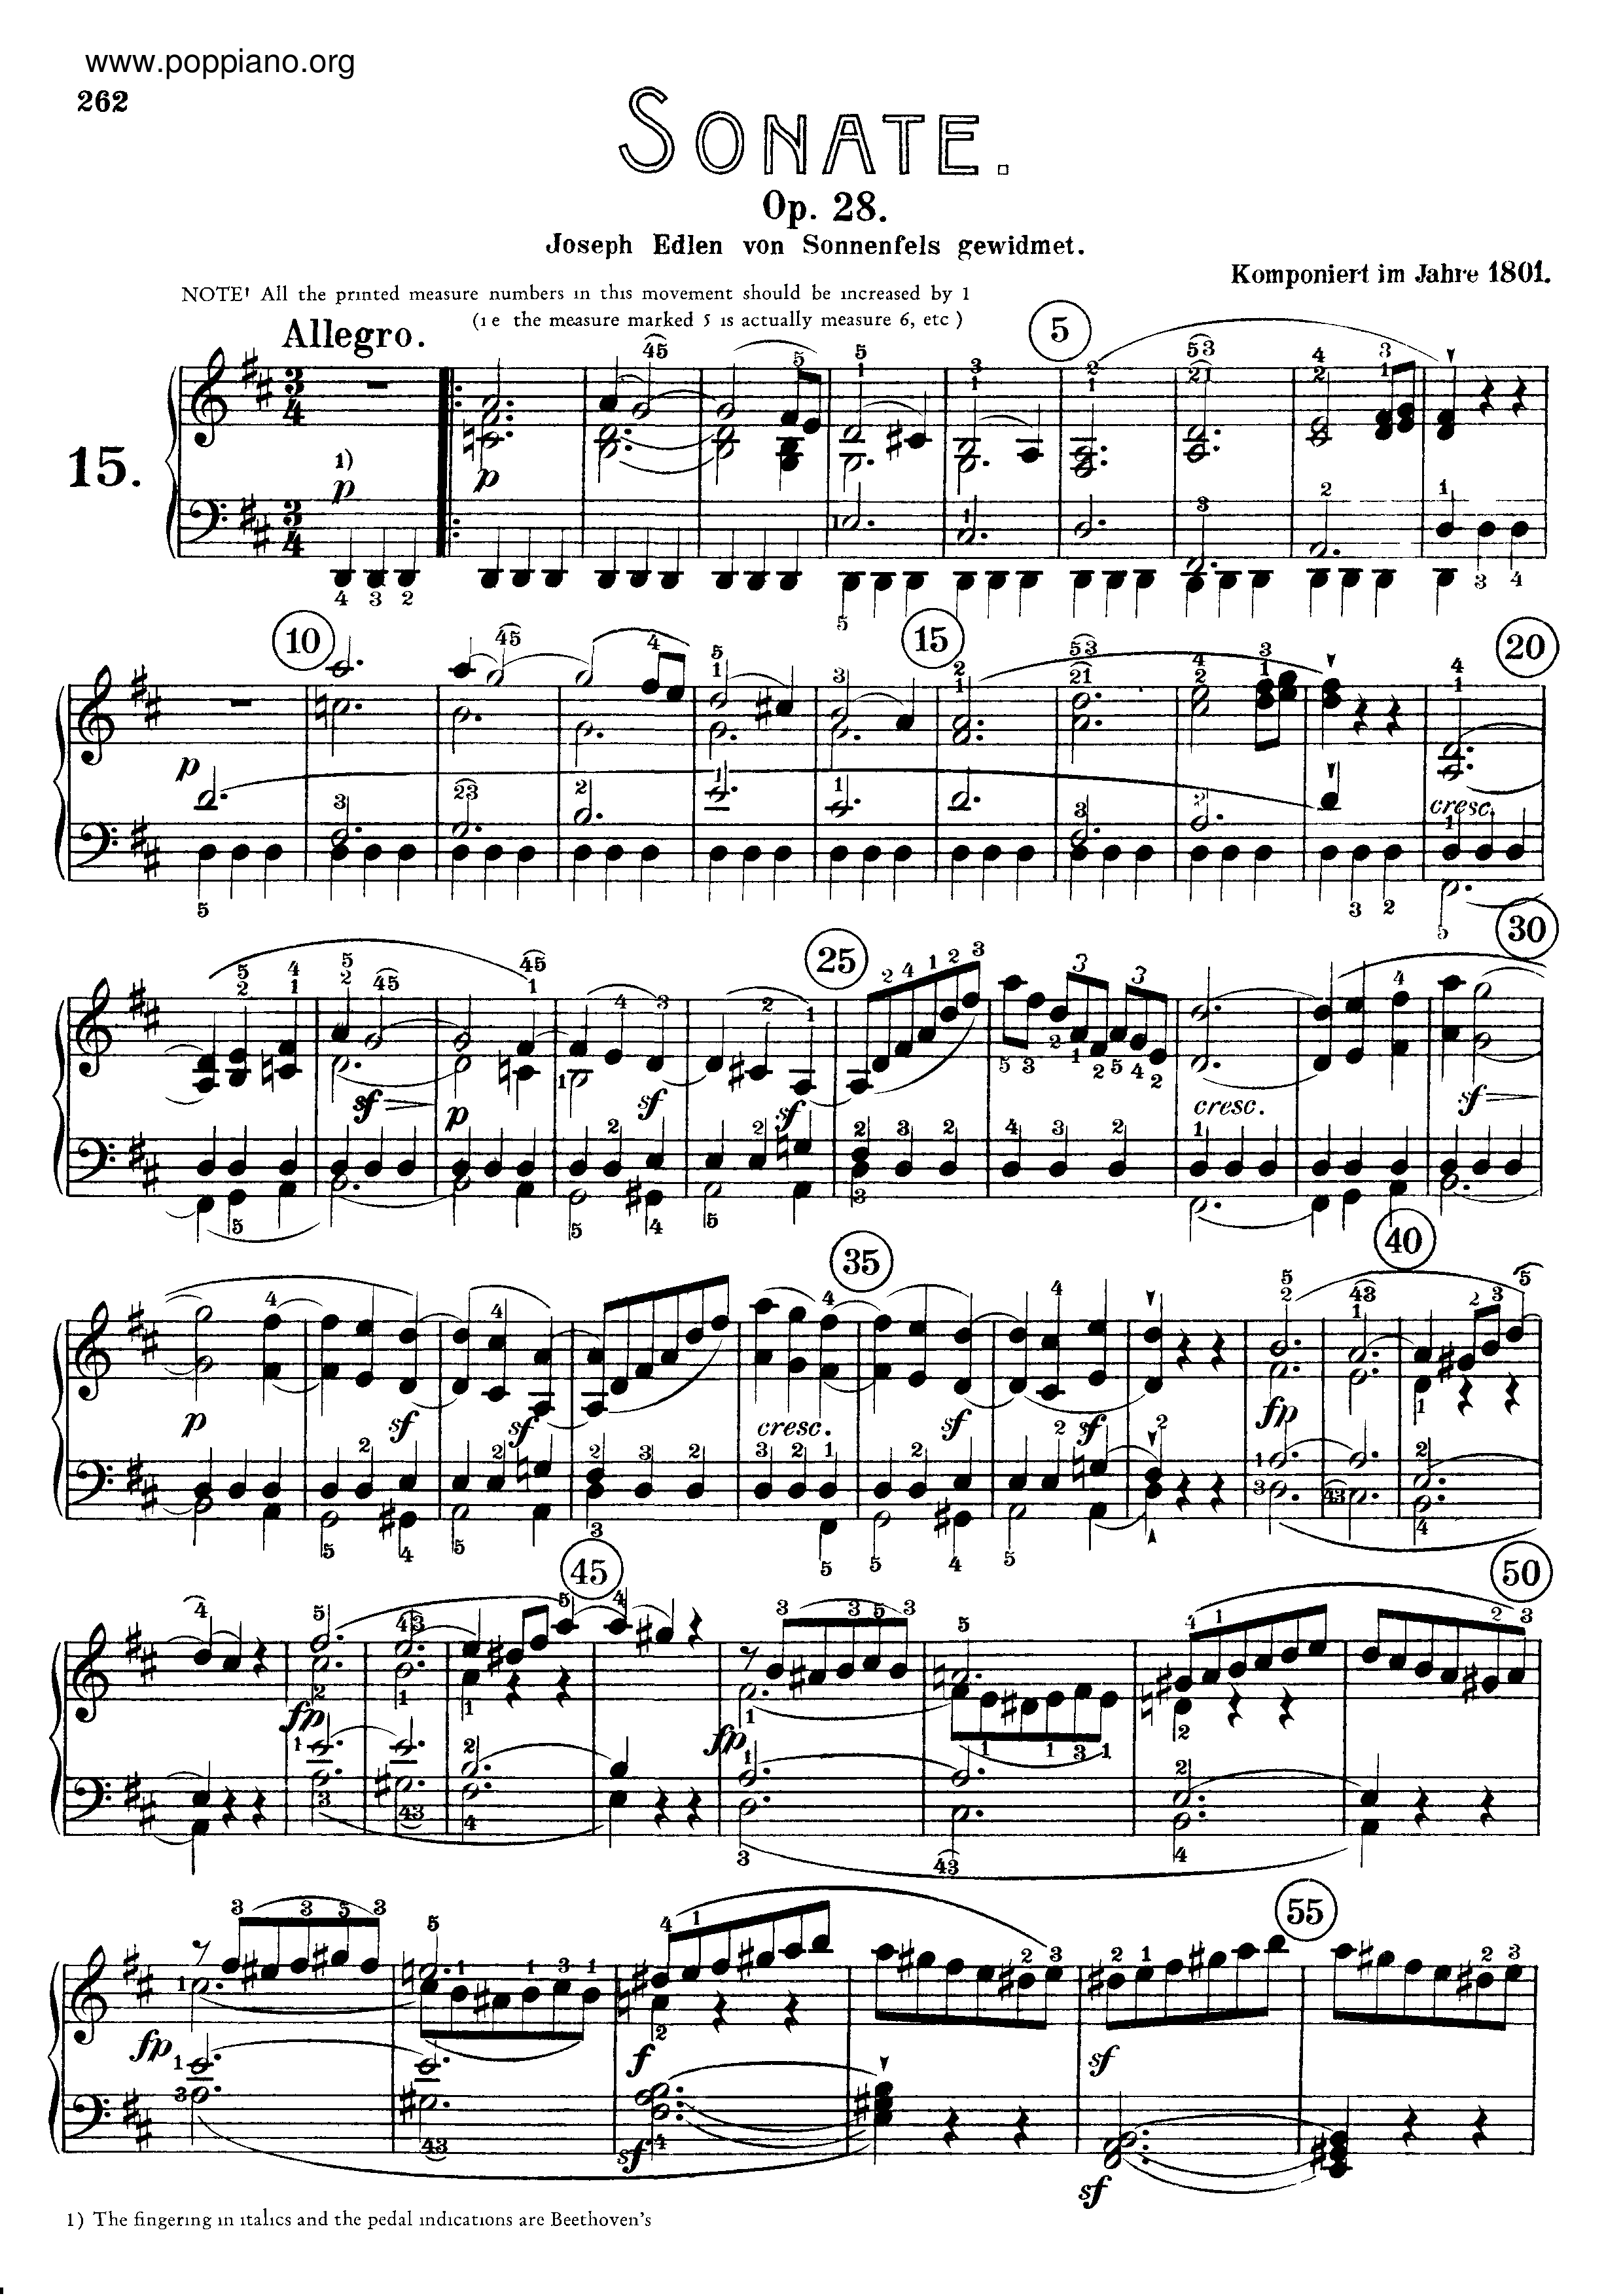 Sonata No. 15 in D major Score